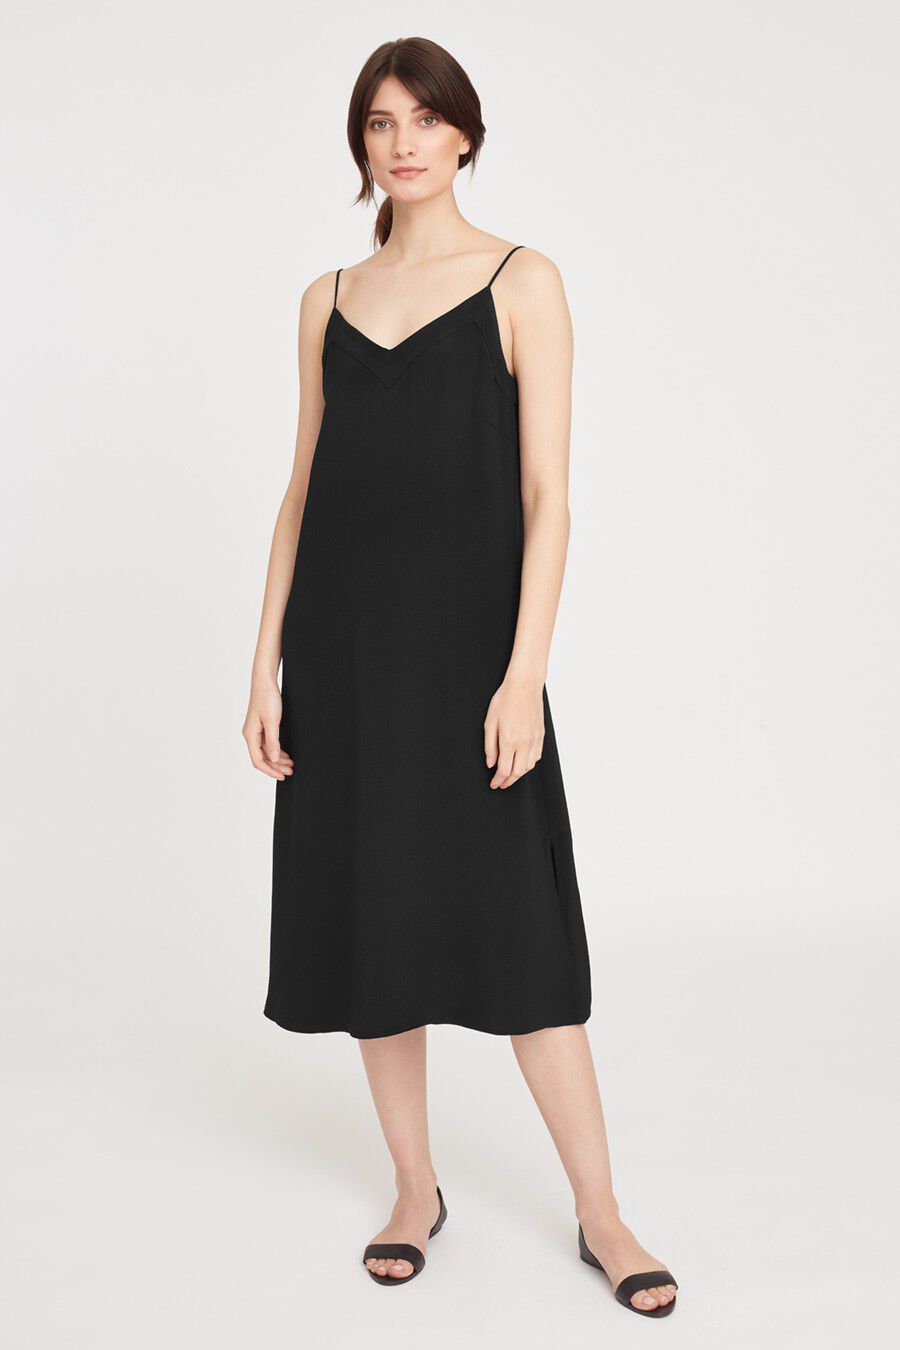 Natural Silk Slip Dress Black Midi 100% Silk Cami Dress Black Silk